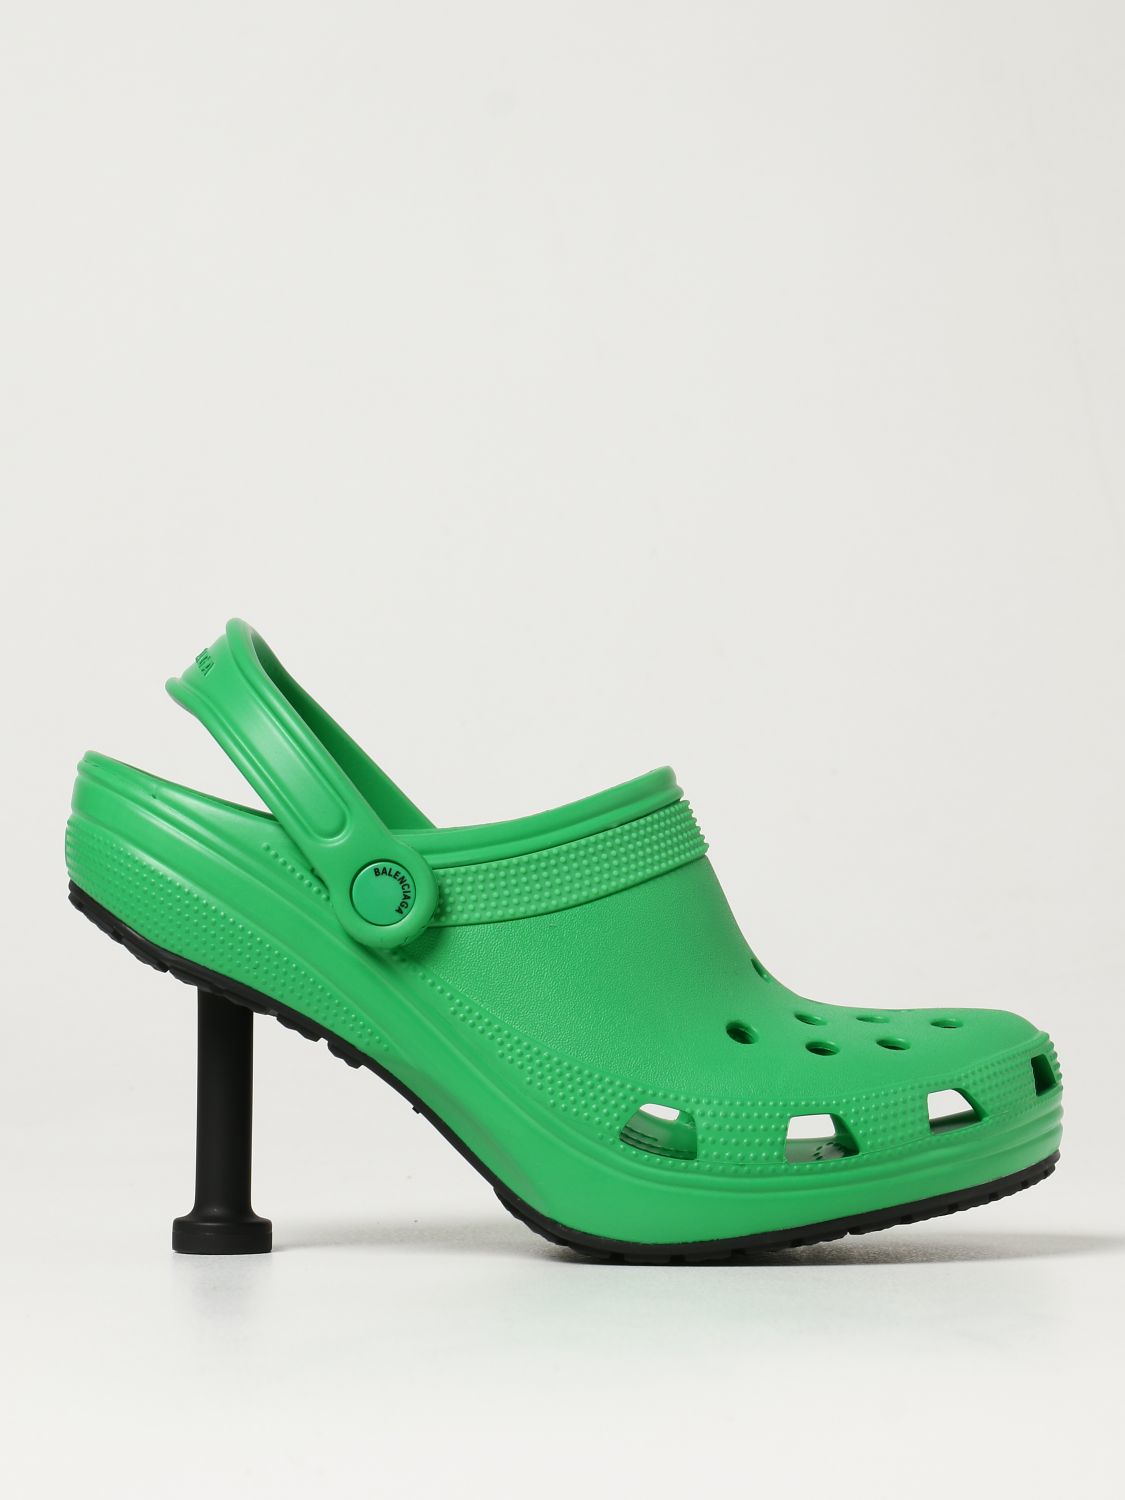 vanidad compañerismo Activamente BALENCIAGA: Zapatos de tacón para mujer, Verde | Zapatos De TacÓN Balenciaga  677390W1S8E en línea en GIGLIO.COM